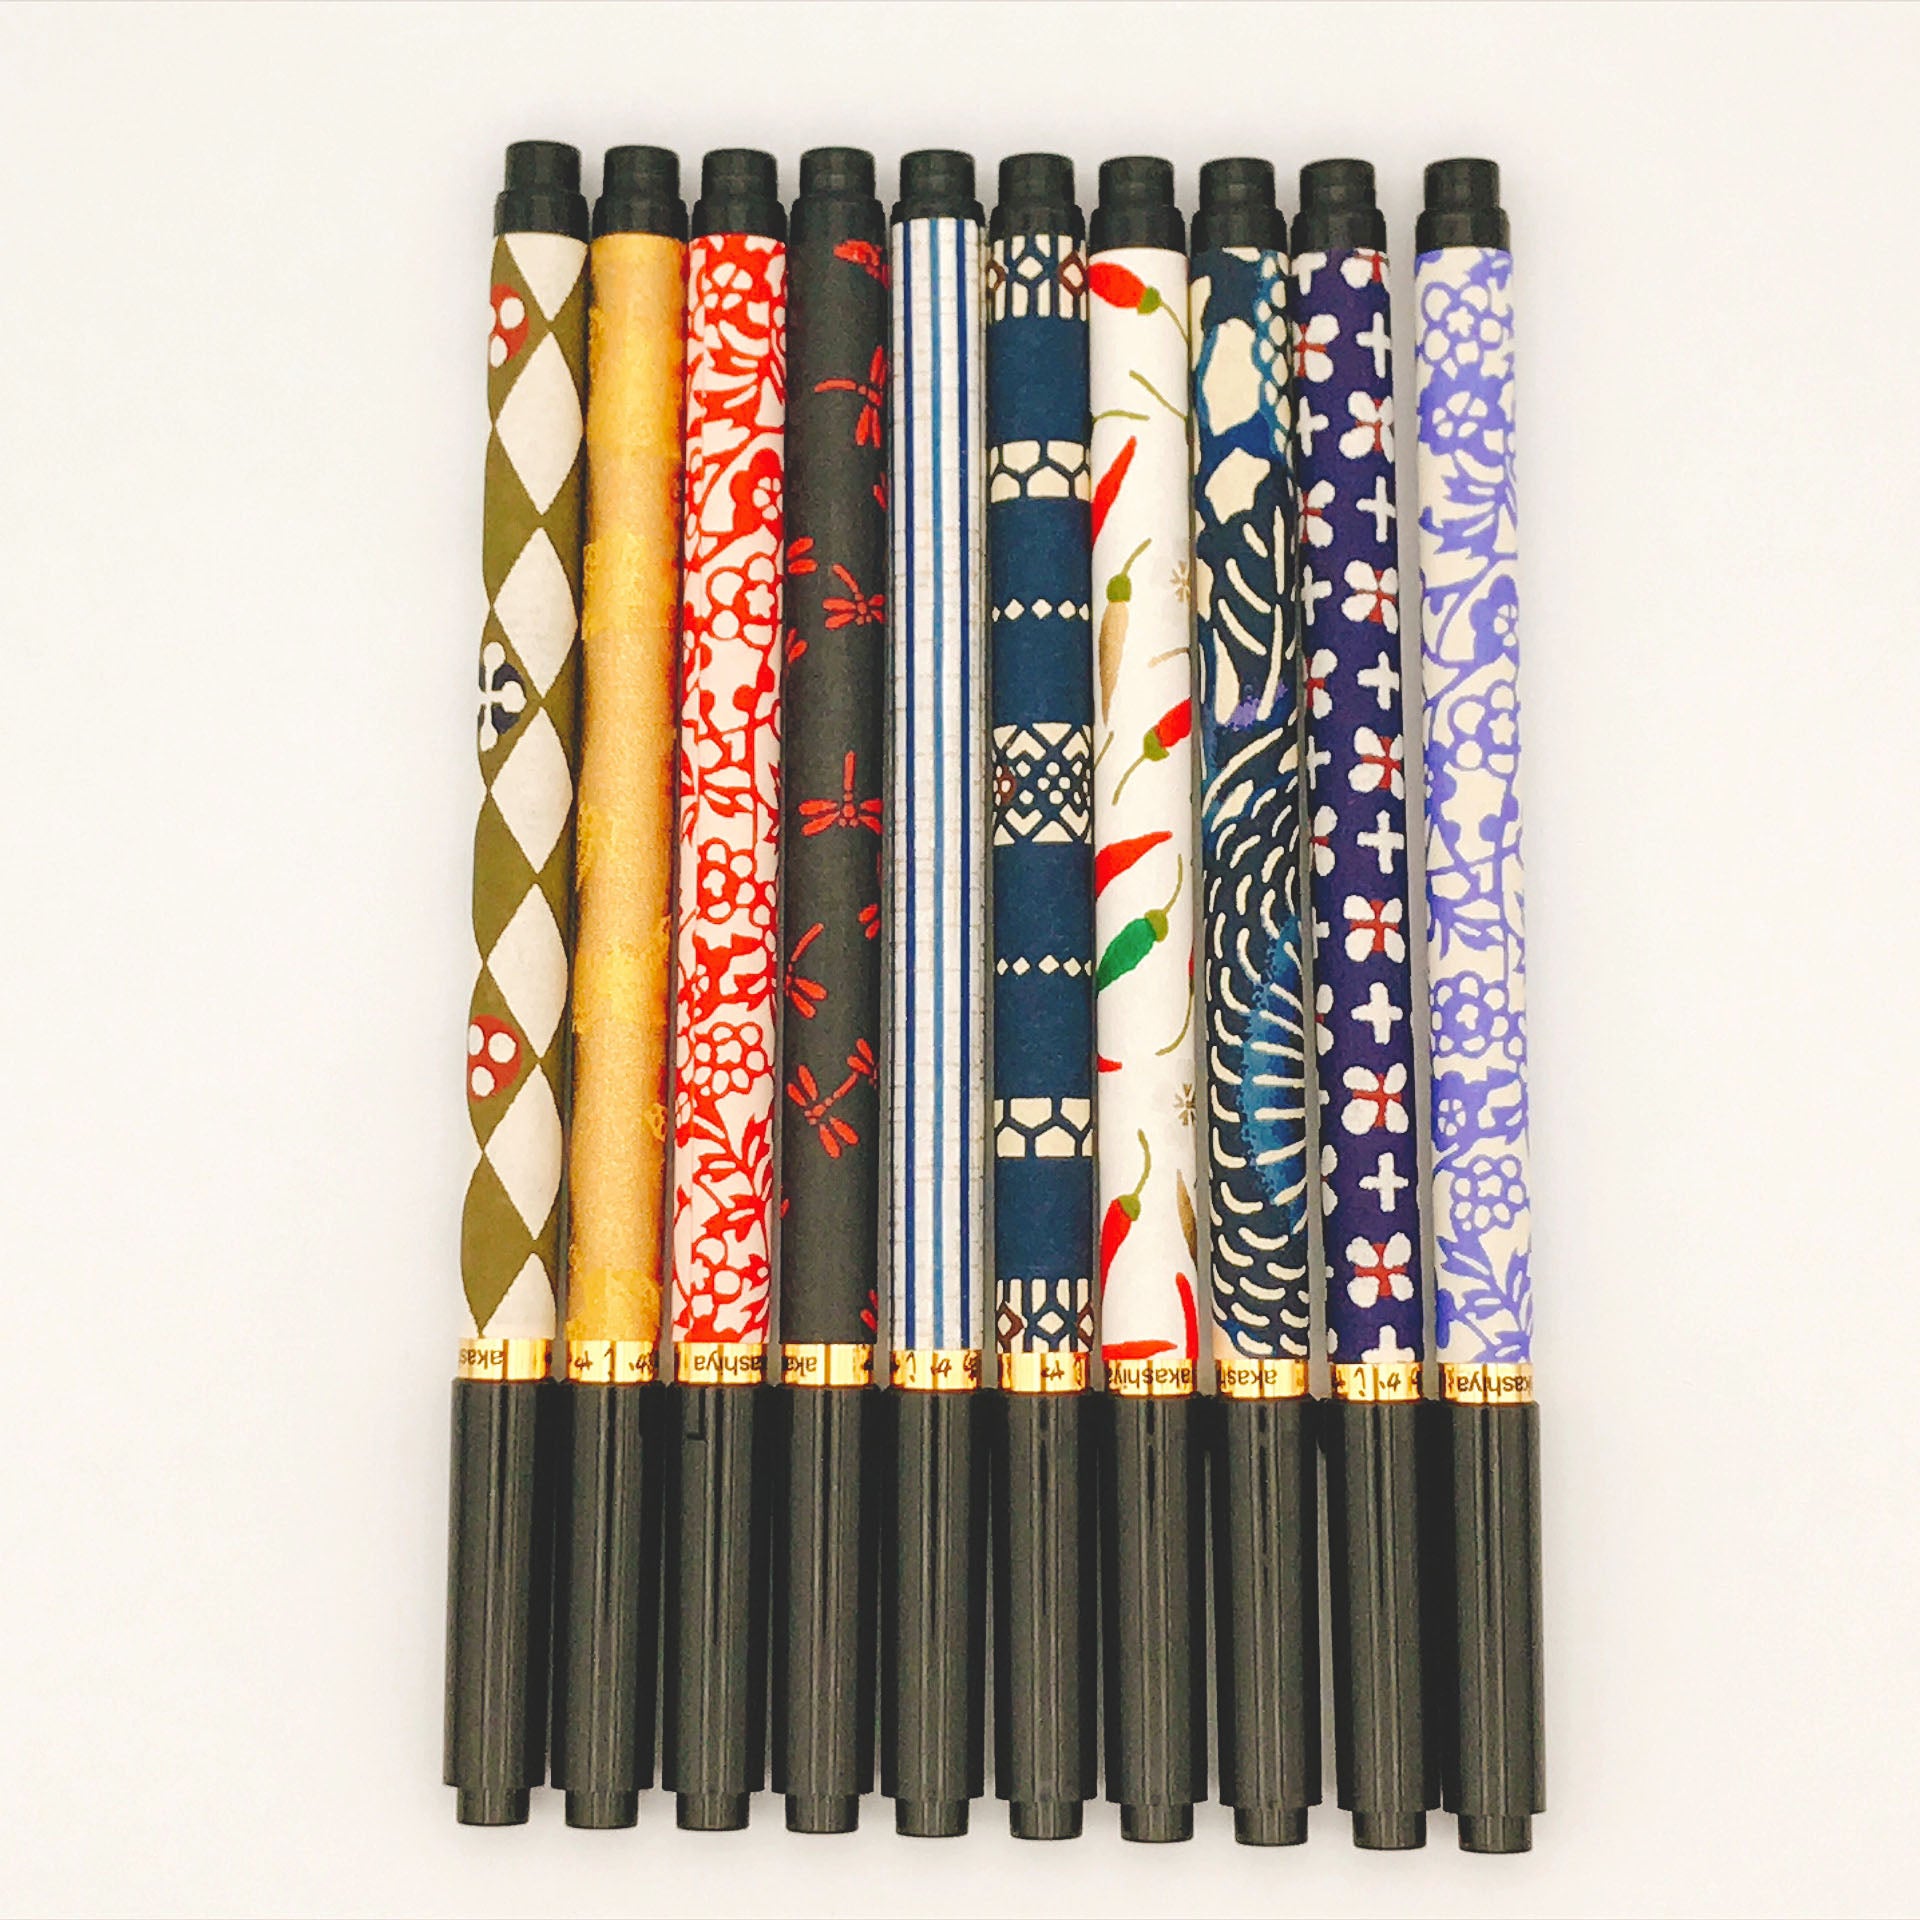 Akashiya - Koto-Japanese Brush Pen With Beautiful Pattern